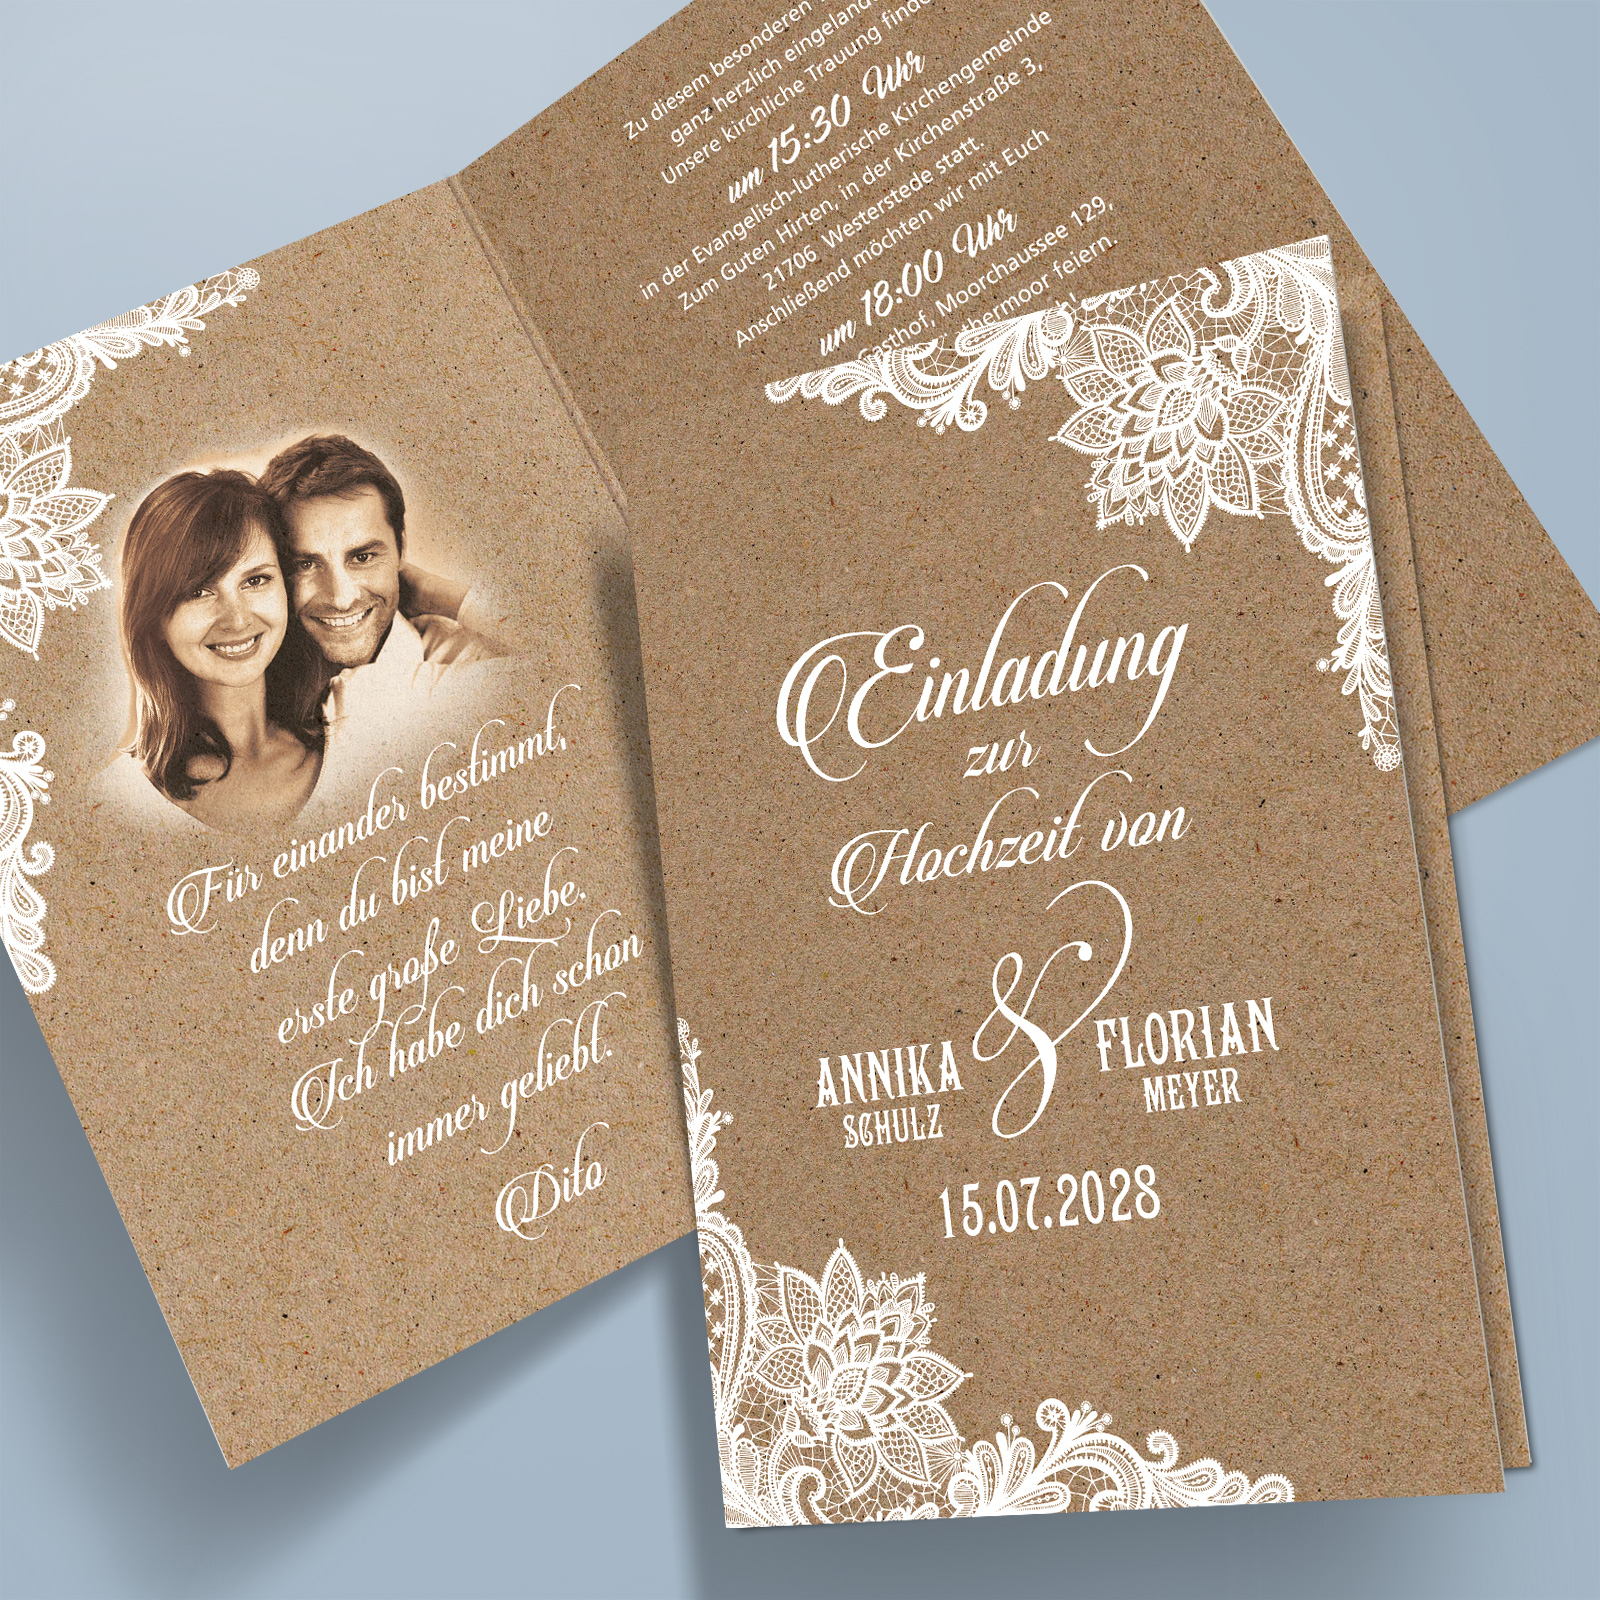 Einladungskarten Hochzeit Spitze Rustikal Bildbearbeitung 1001karte